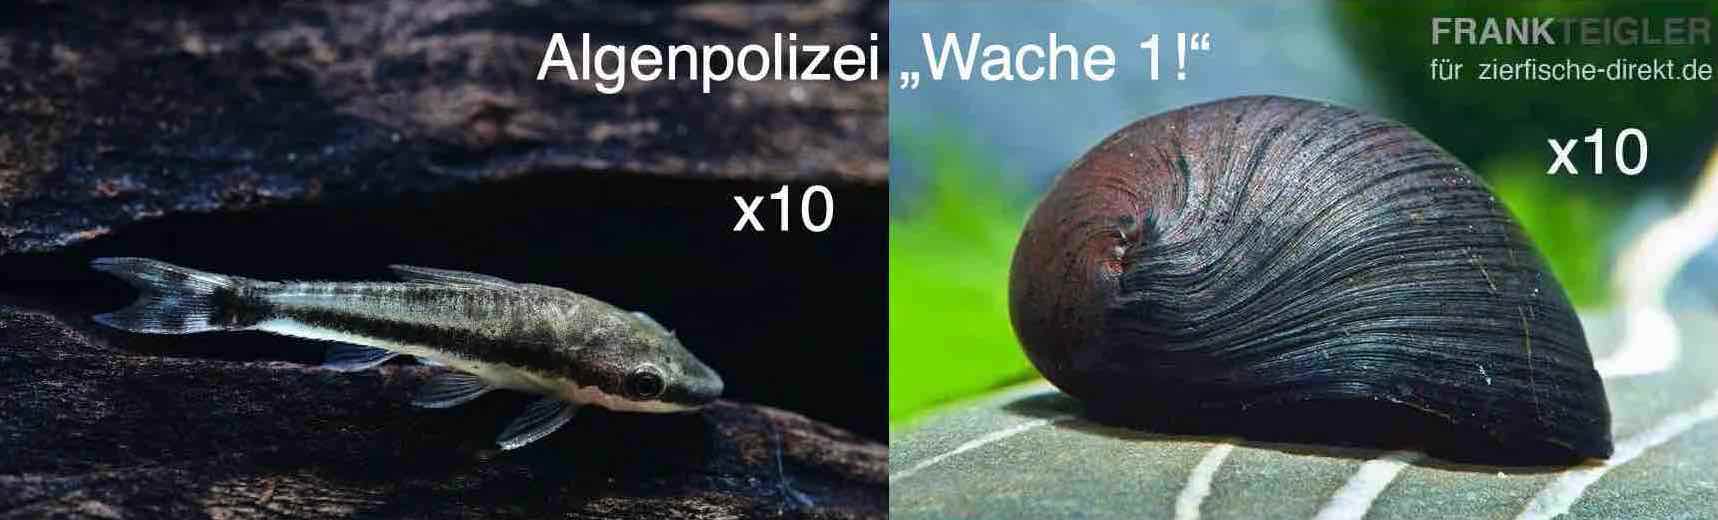 Algen-Polizei "Wache 1": 10 Otocinclus affinis + 10 Napfschnecken